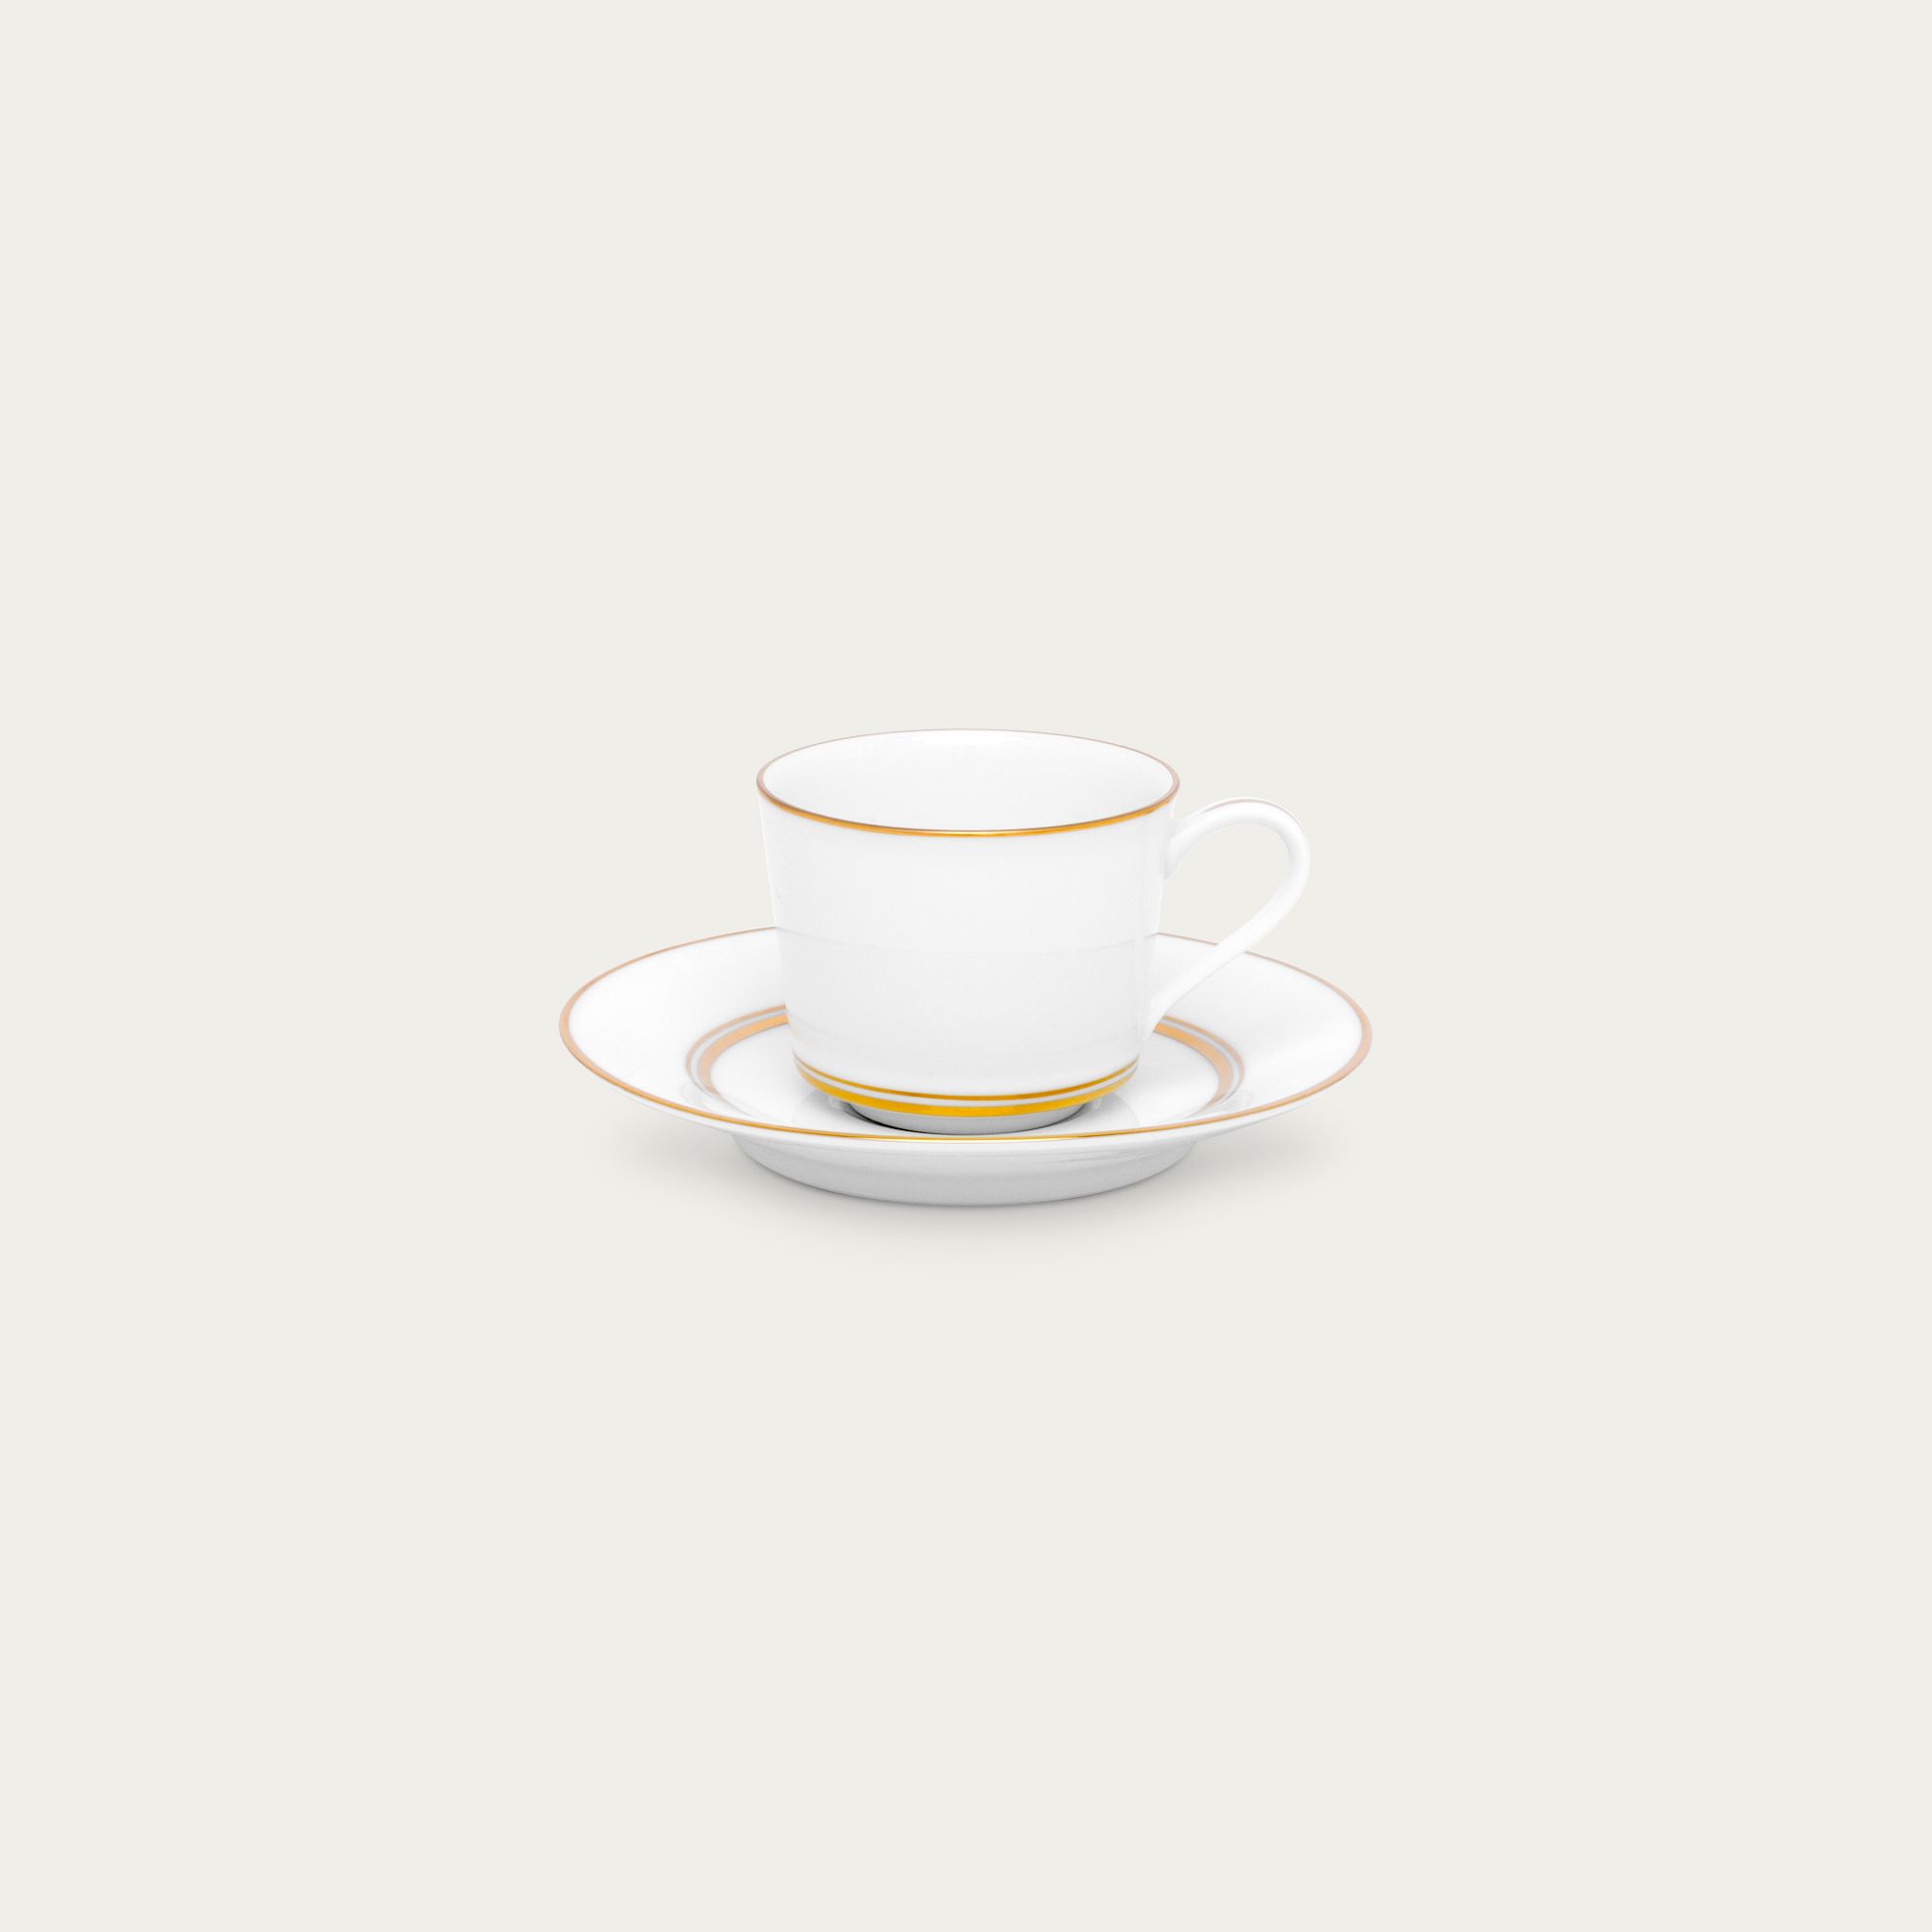  Chén trà (tách trà) nhỏ 100ml kèm đĩa lót | Gloria L553L-T91992 